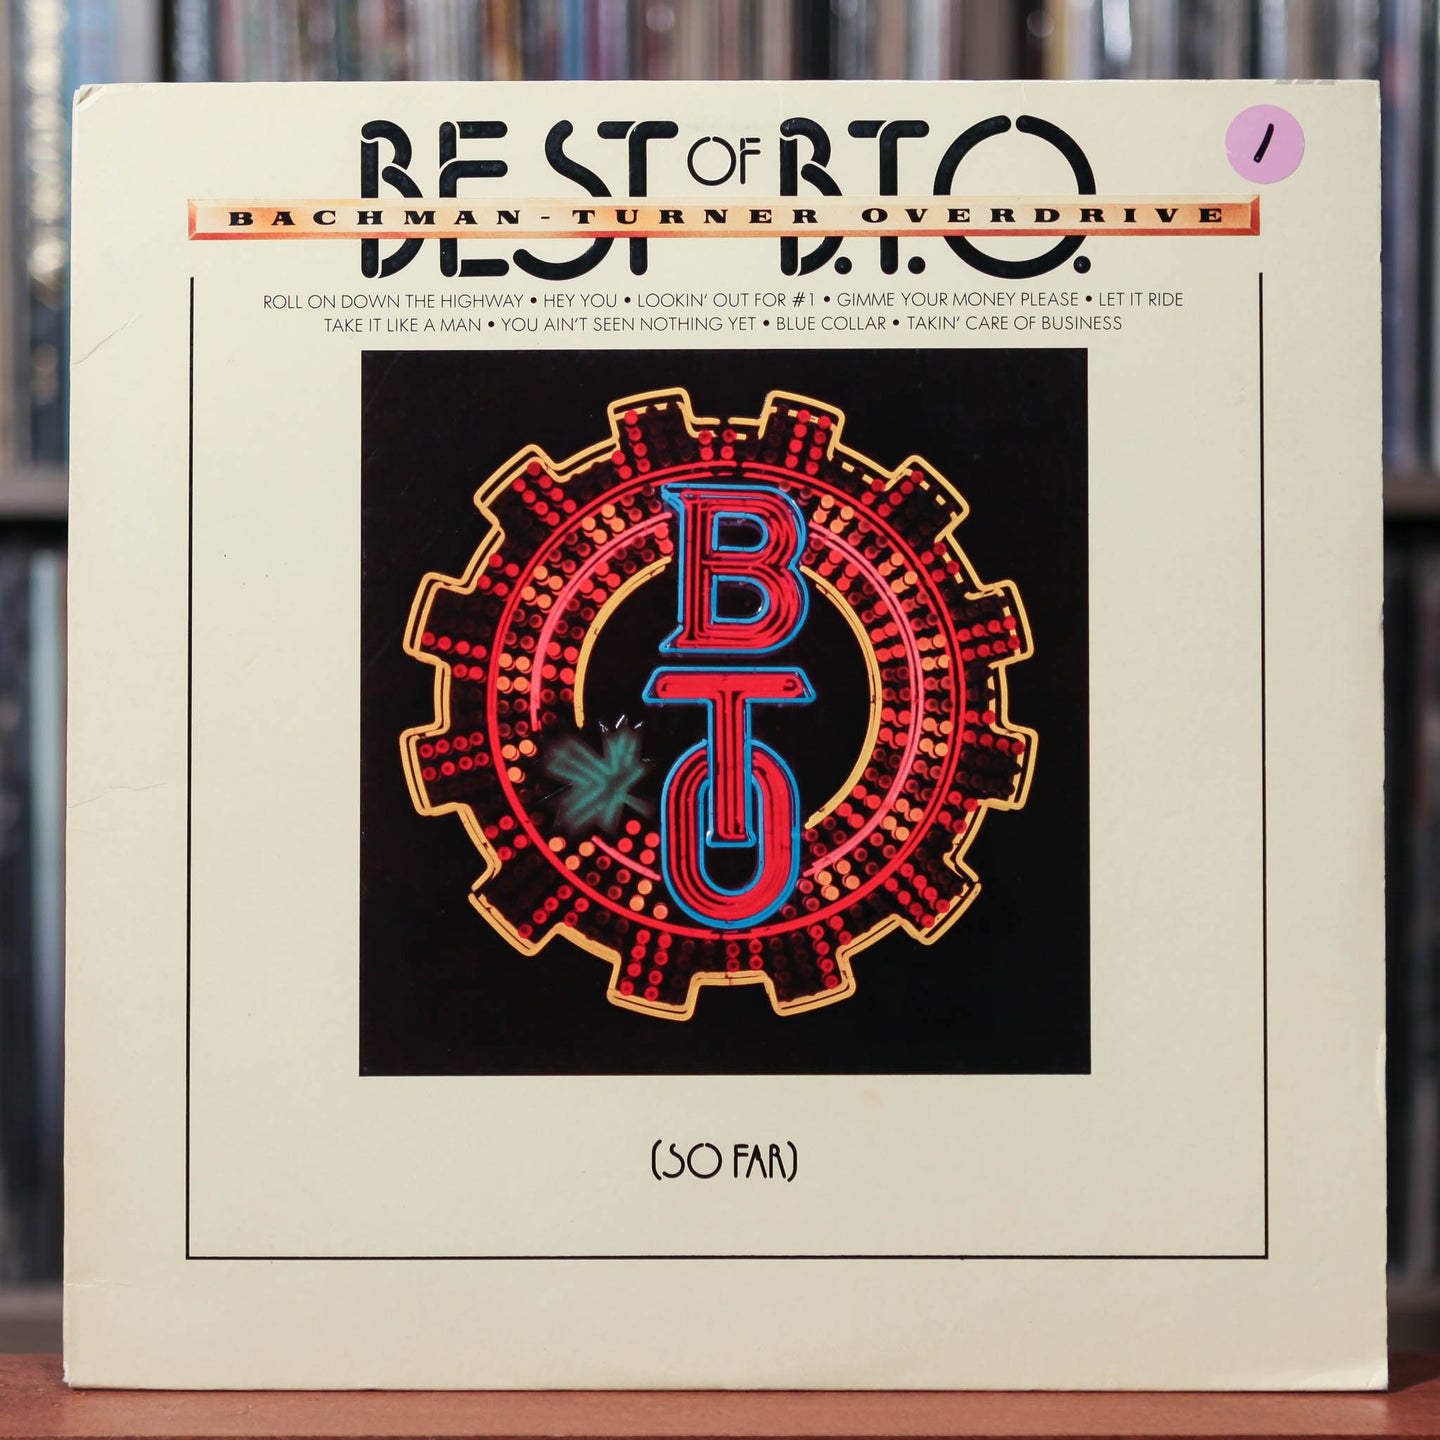 BTO - Best Of (So Far) - 1976 Mercury, VG+/VG+